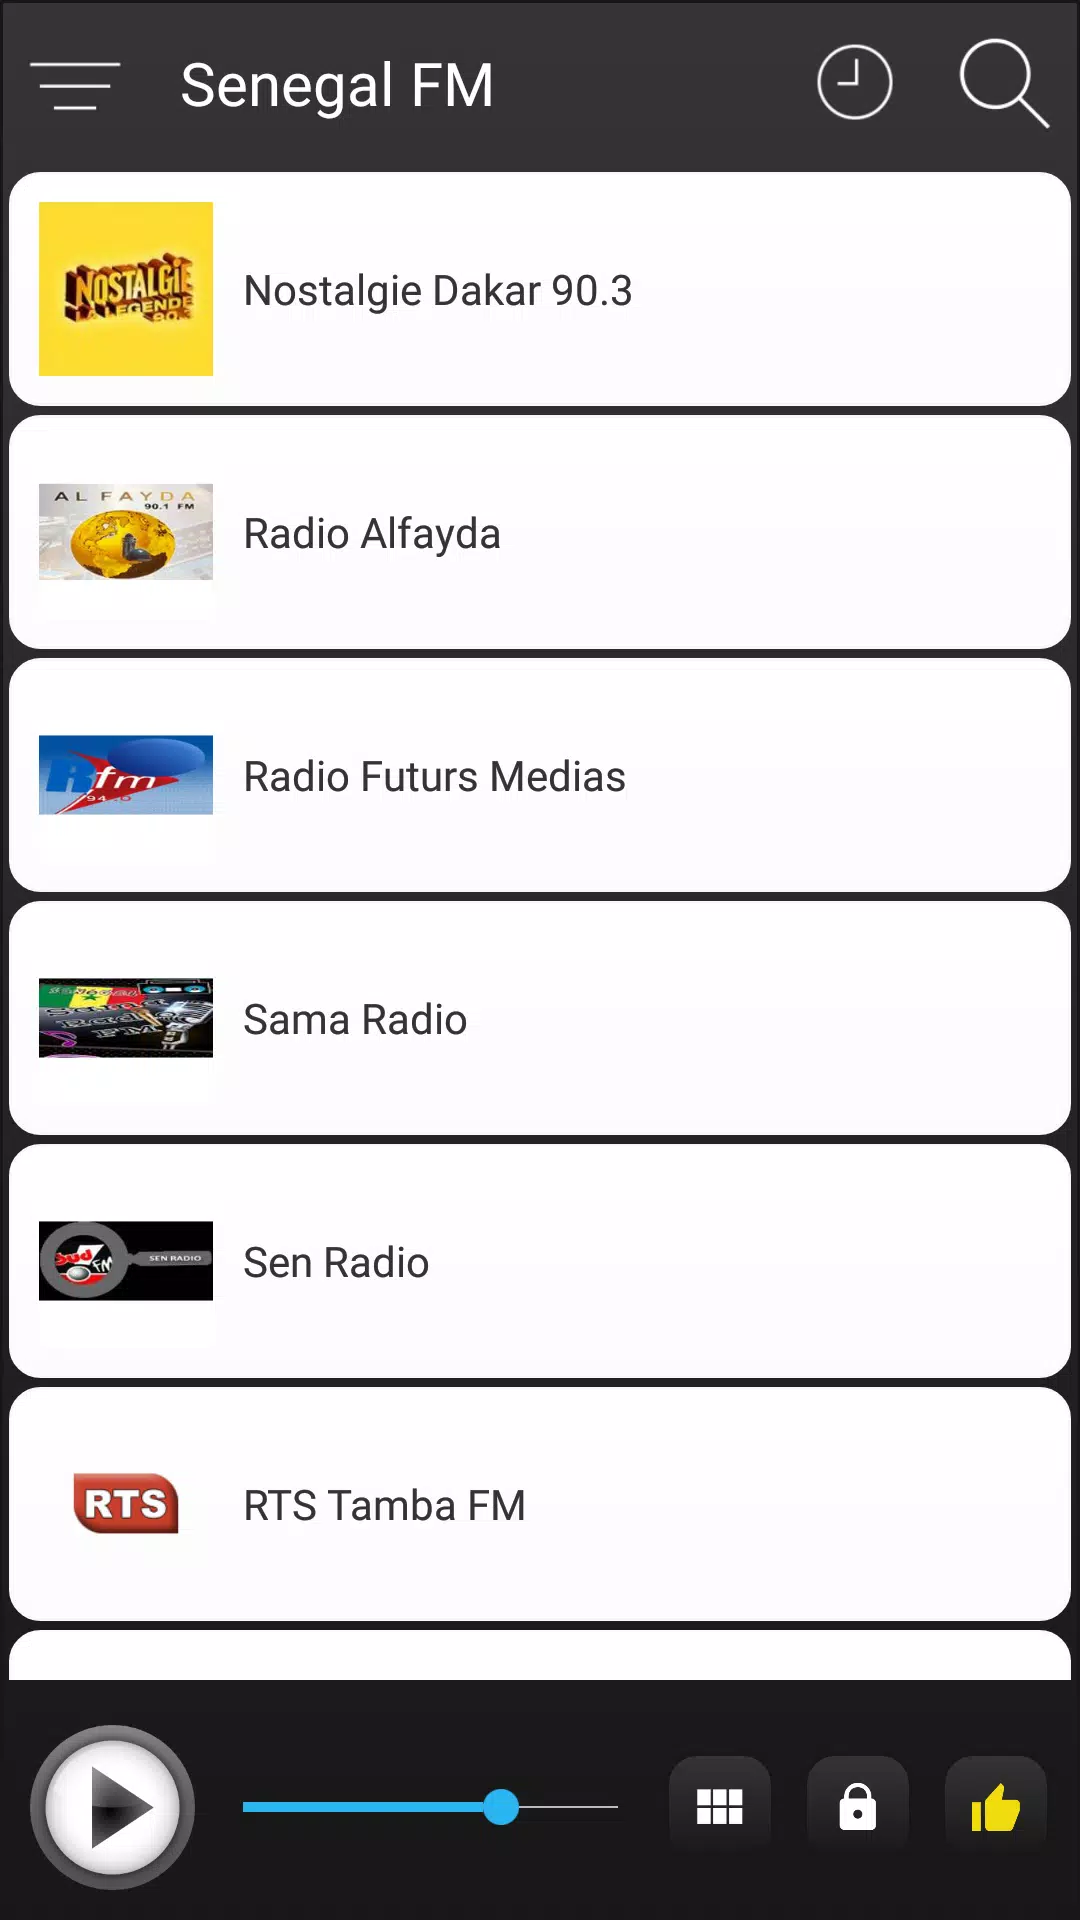 Senegal Radio FM Live Online APK pour Android Télécharger